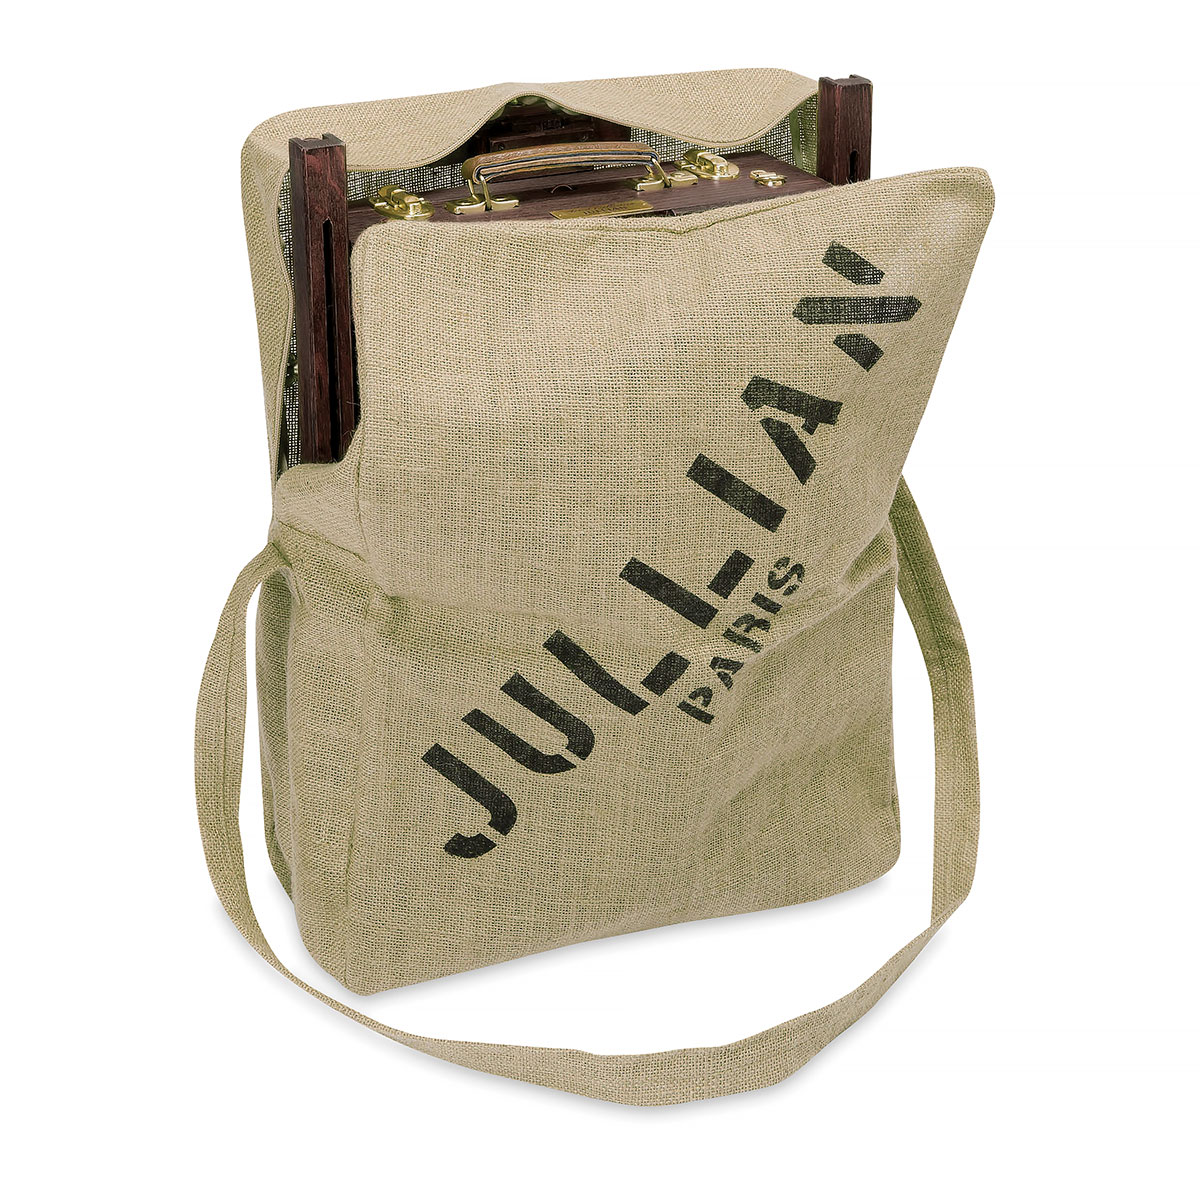 Jullian : Full Vintage French Easel : Oak With Jute Bag - Jullian